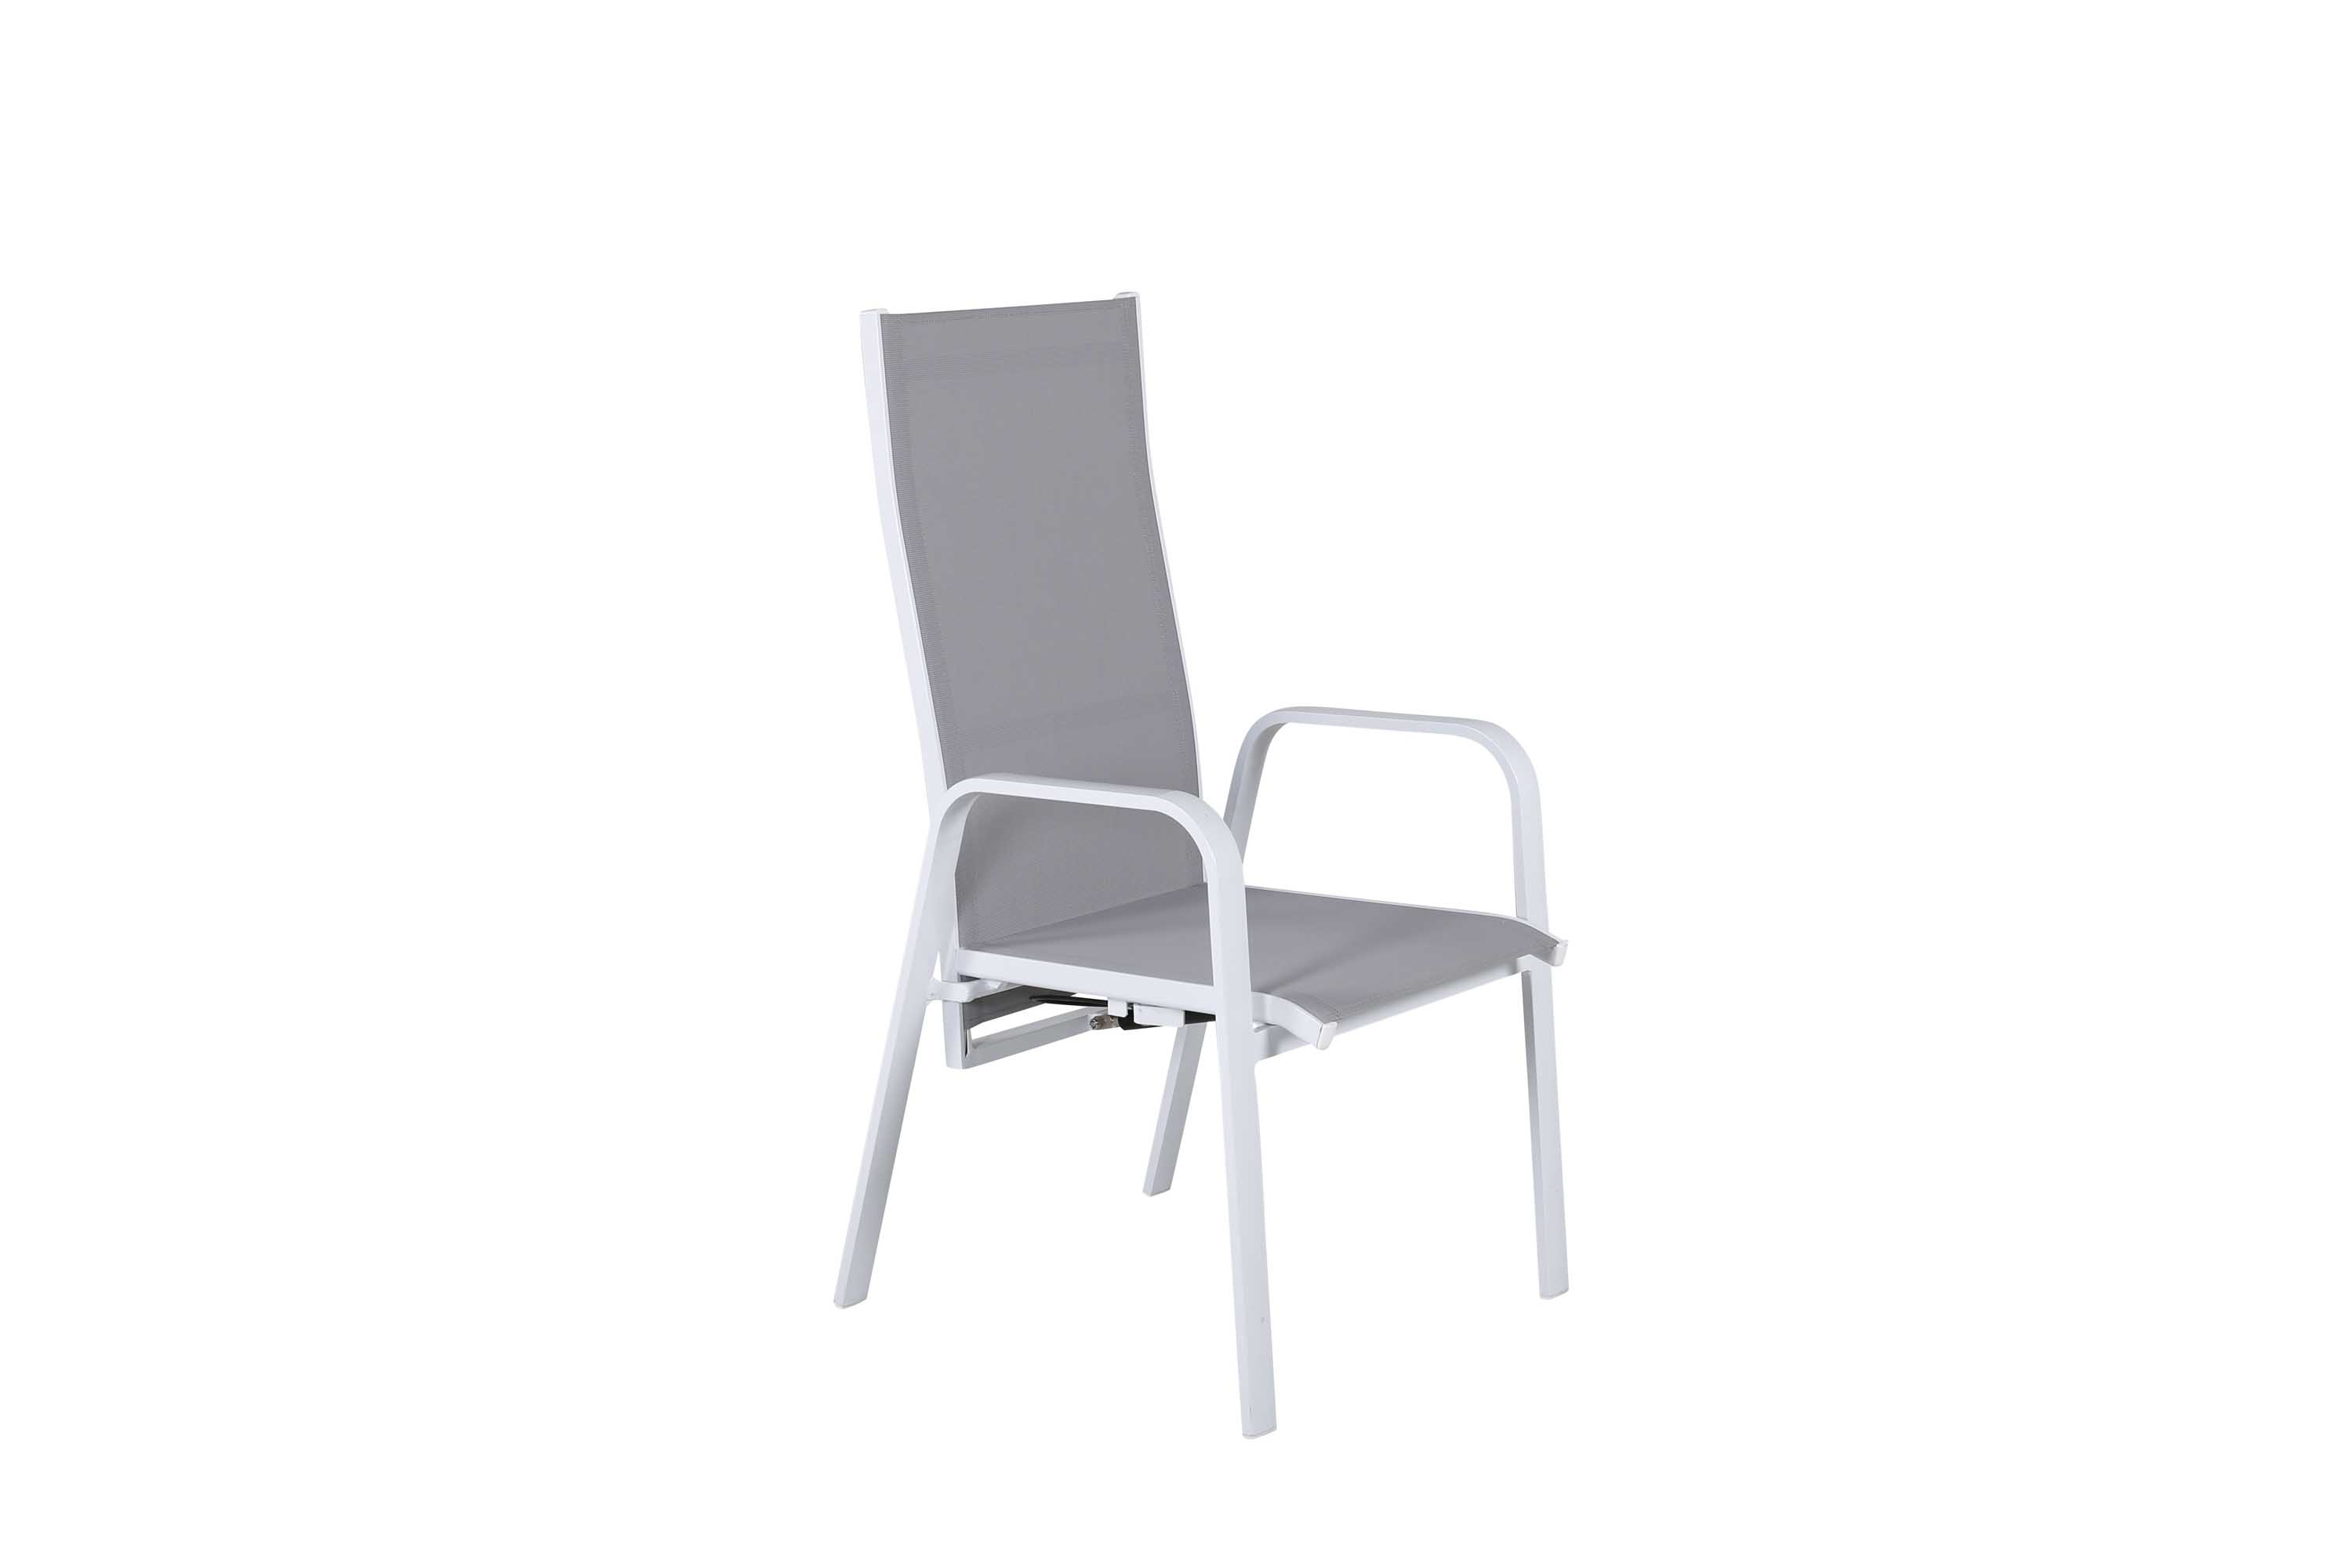 Venture Design Copacabana positionsstol Hvid/grå 